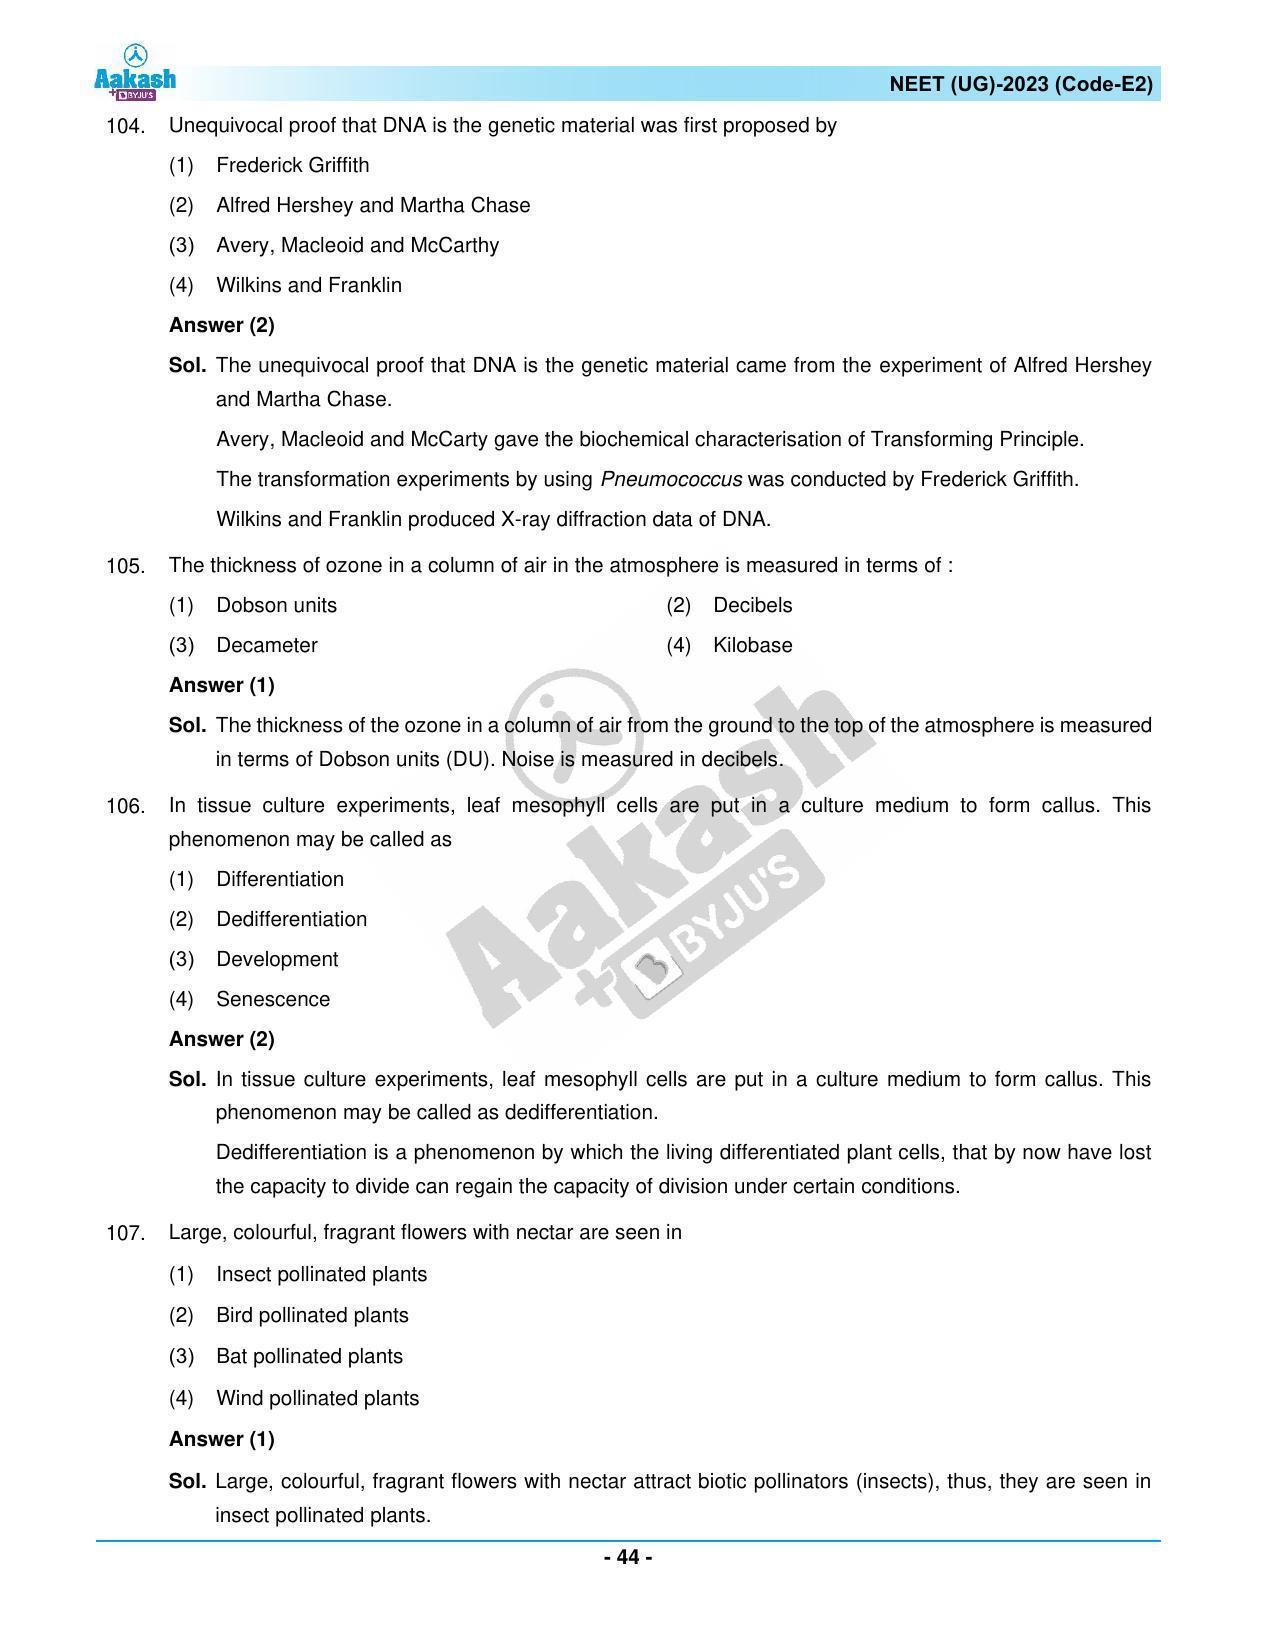 NEET 2023 Question Paper E2 - Page 44